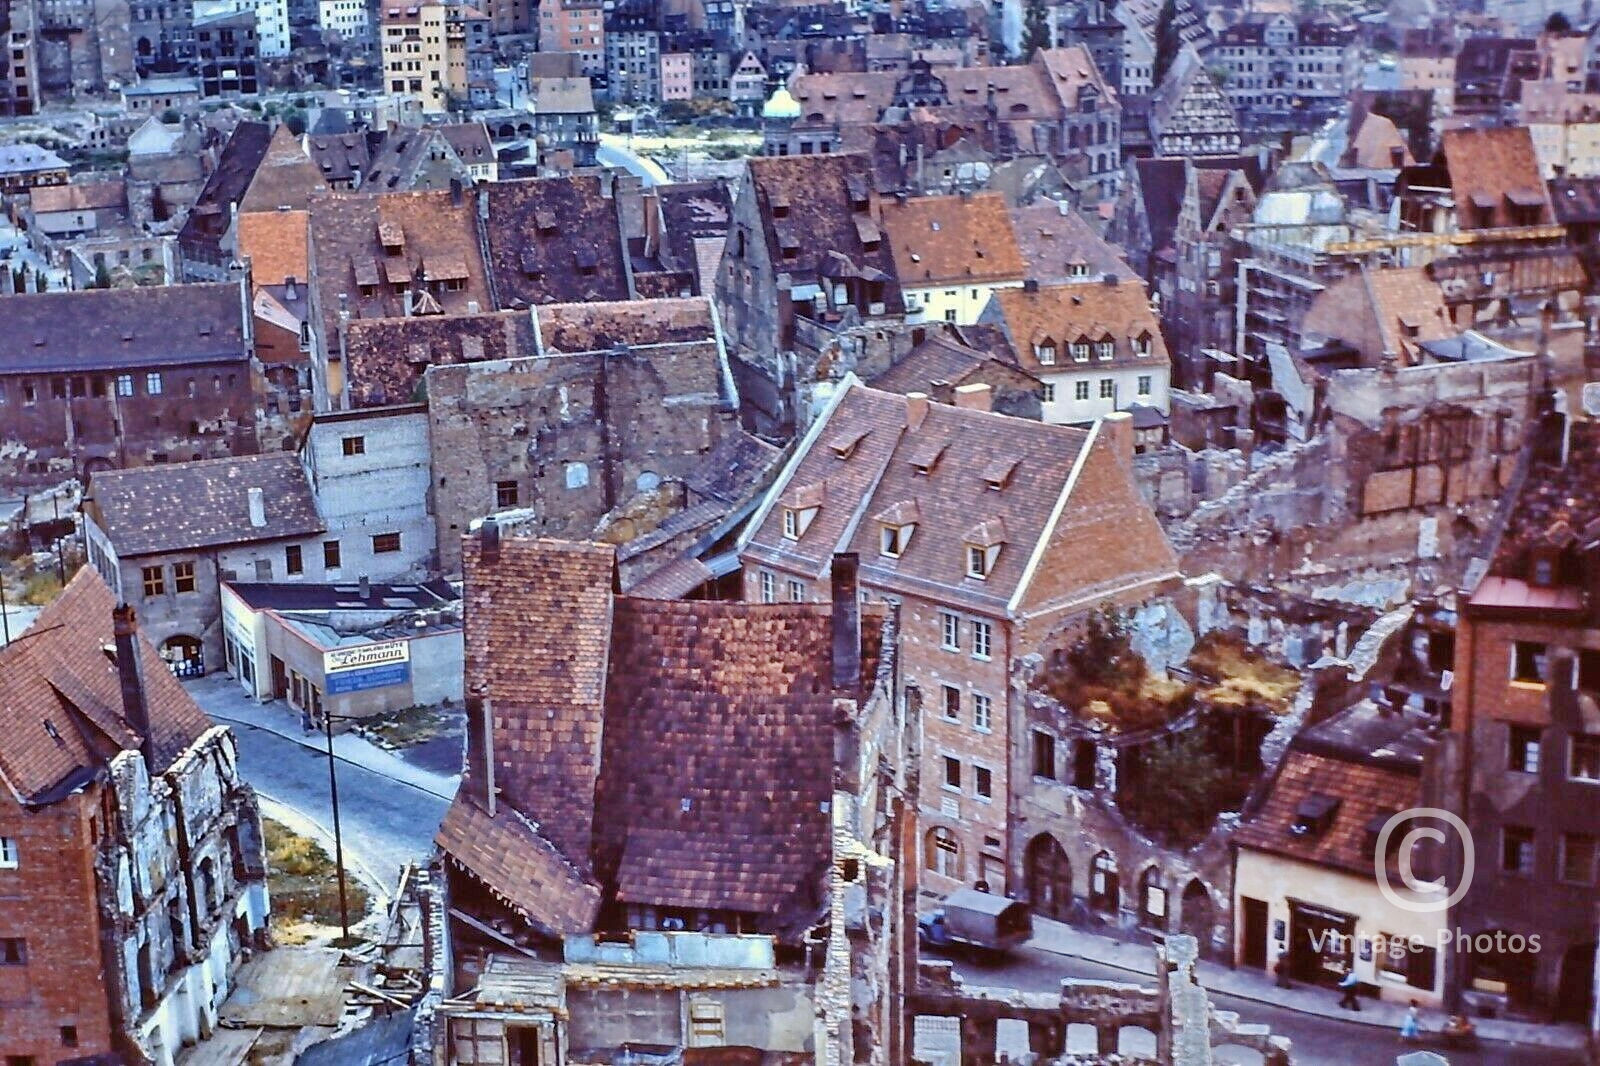 1960 German Bombing Ruins Nuremberg